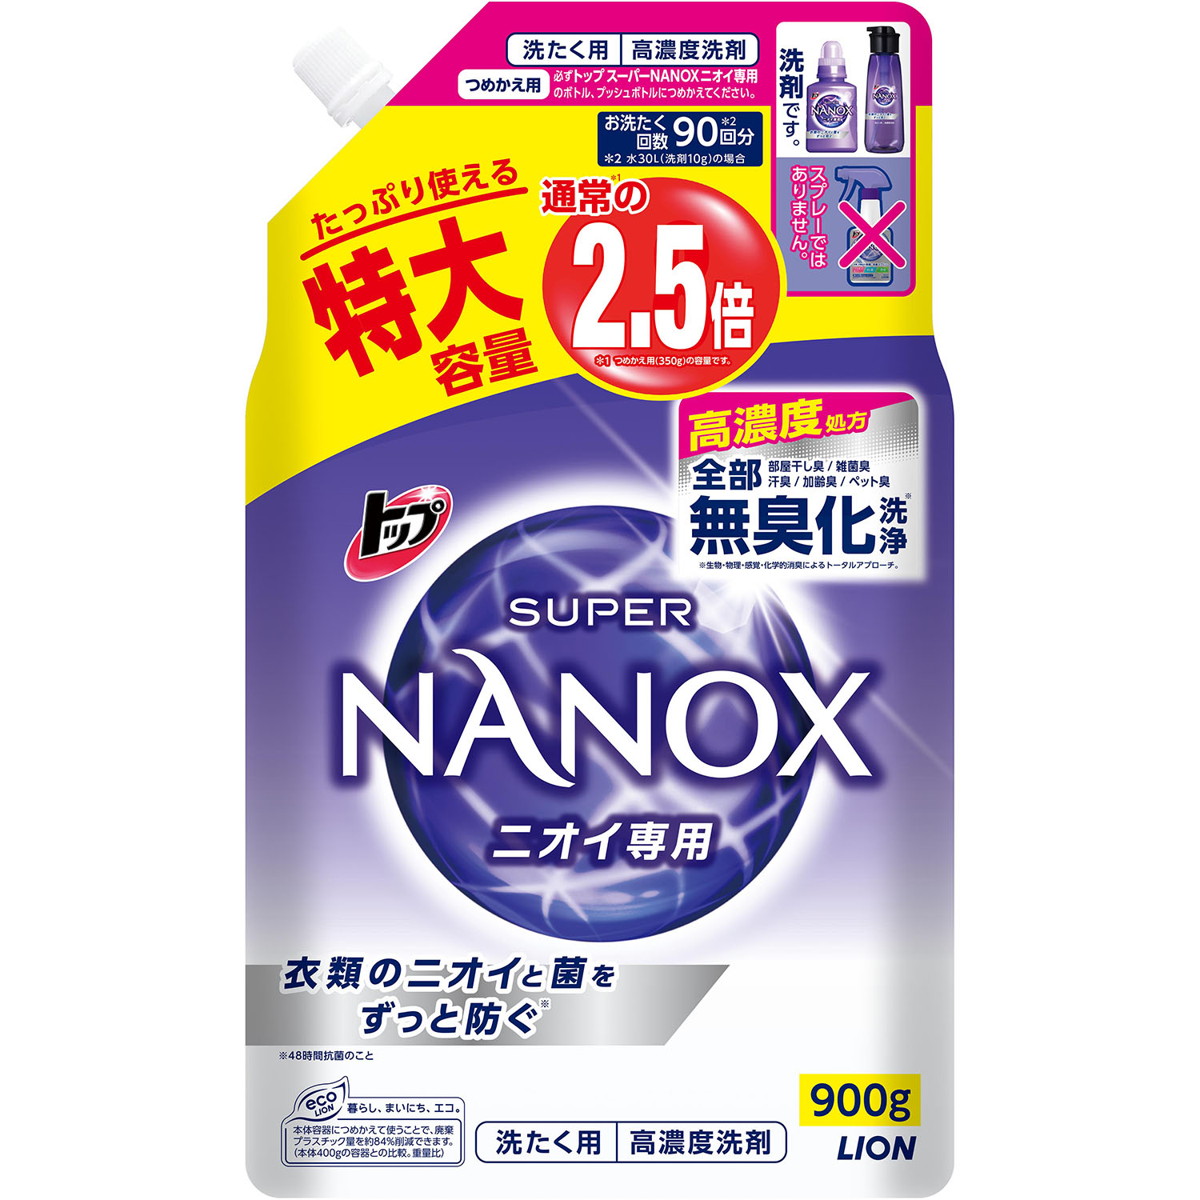 トップ スーパーNANOX ナノックス ニオイ専用 洗濯洗剤 詰め替え 特大 900g×12袋